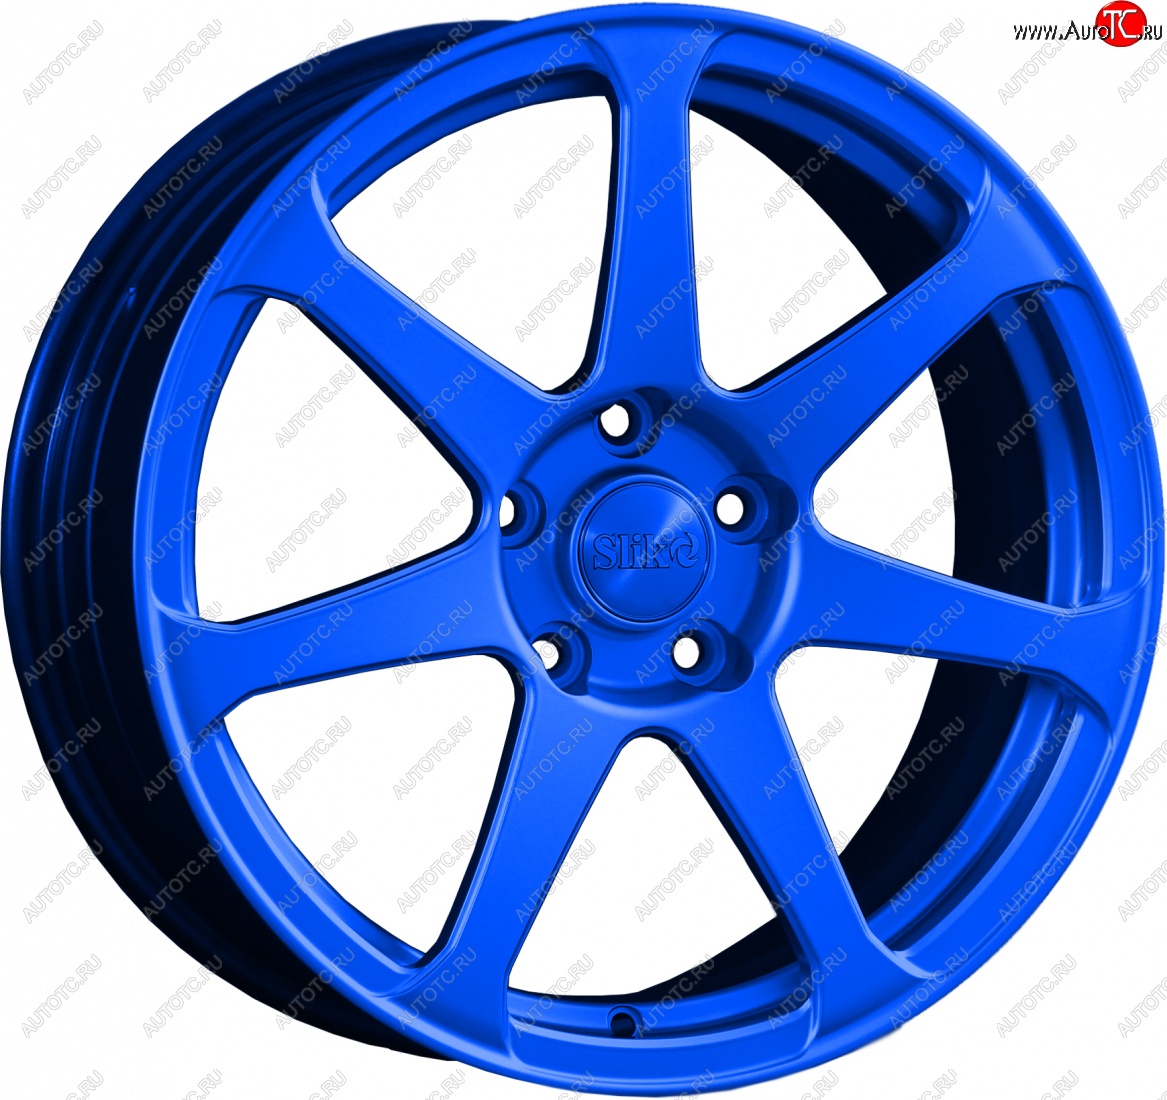 14 499 р. Кованый диск Slik classik R17x7.5 Candy BLUE синий 7.5x17 Toyota Allion T240 седан дорестайлинг (2001-2004) 5x100.0xDIA54.1xET45.0 (Цвет: Candy BLUE синий 7.5x17)